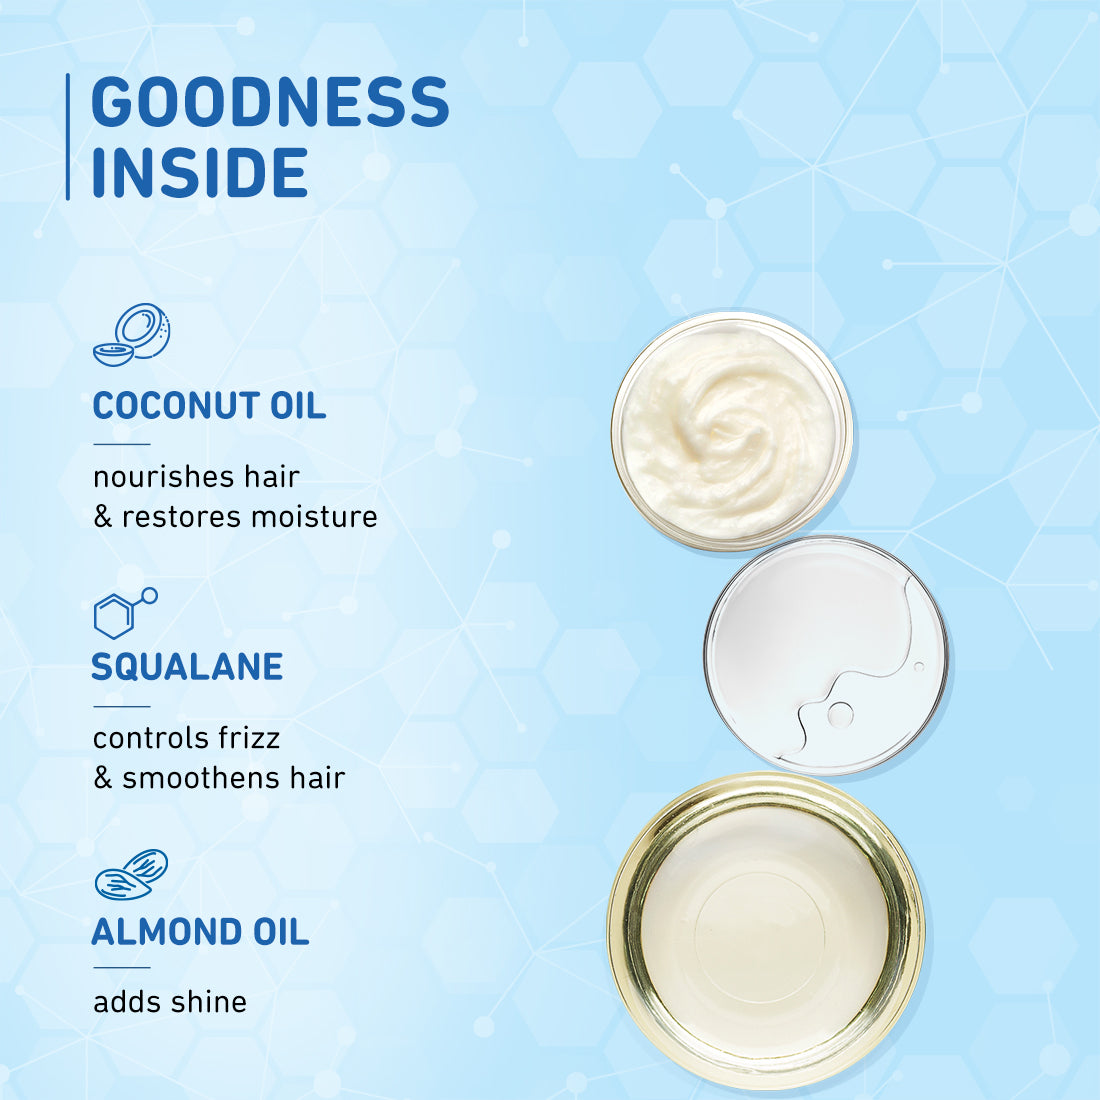 Coconut & Squalane Nutri-Shine Hair Serum